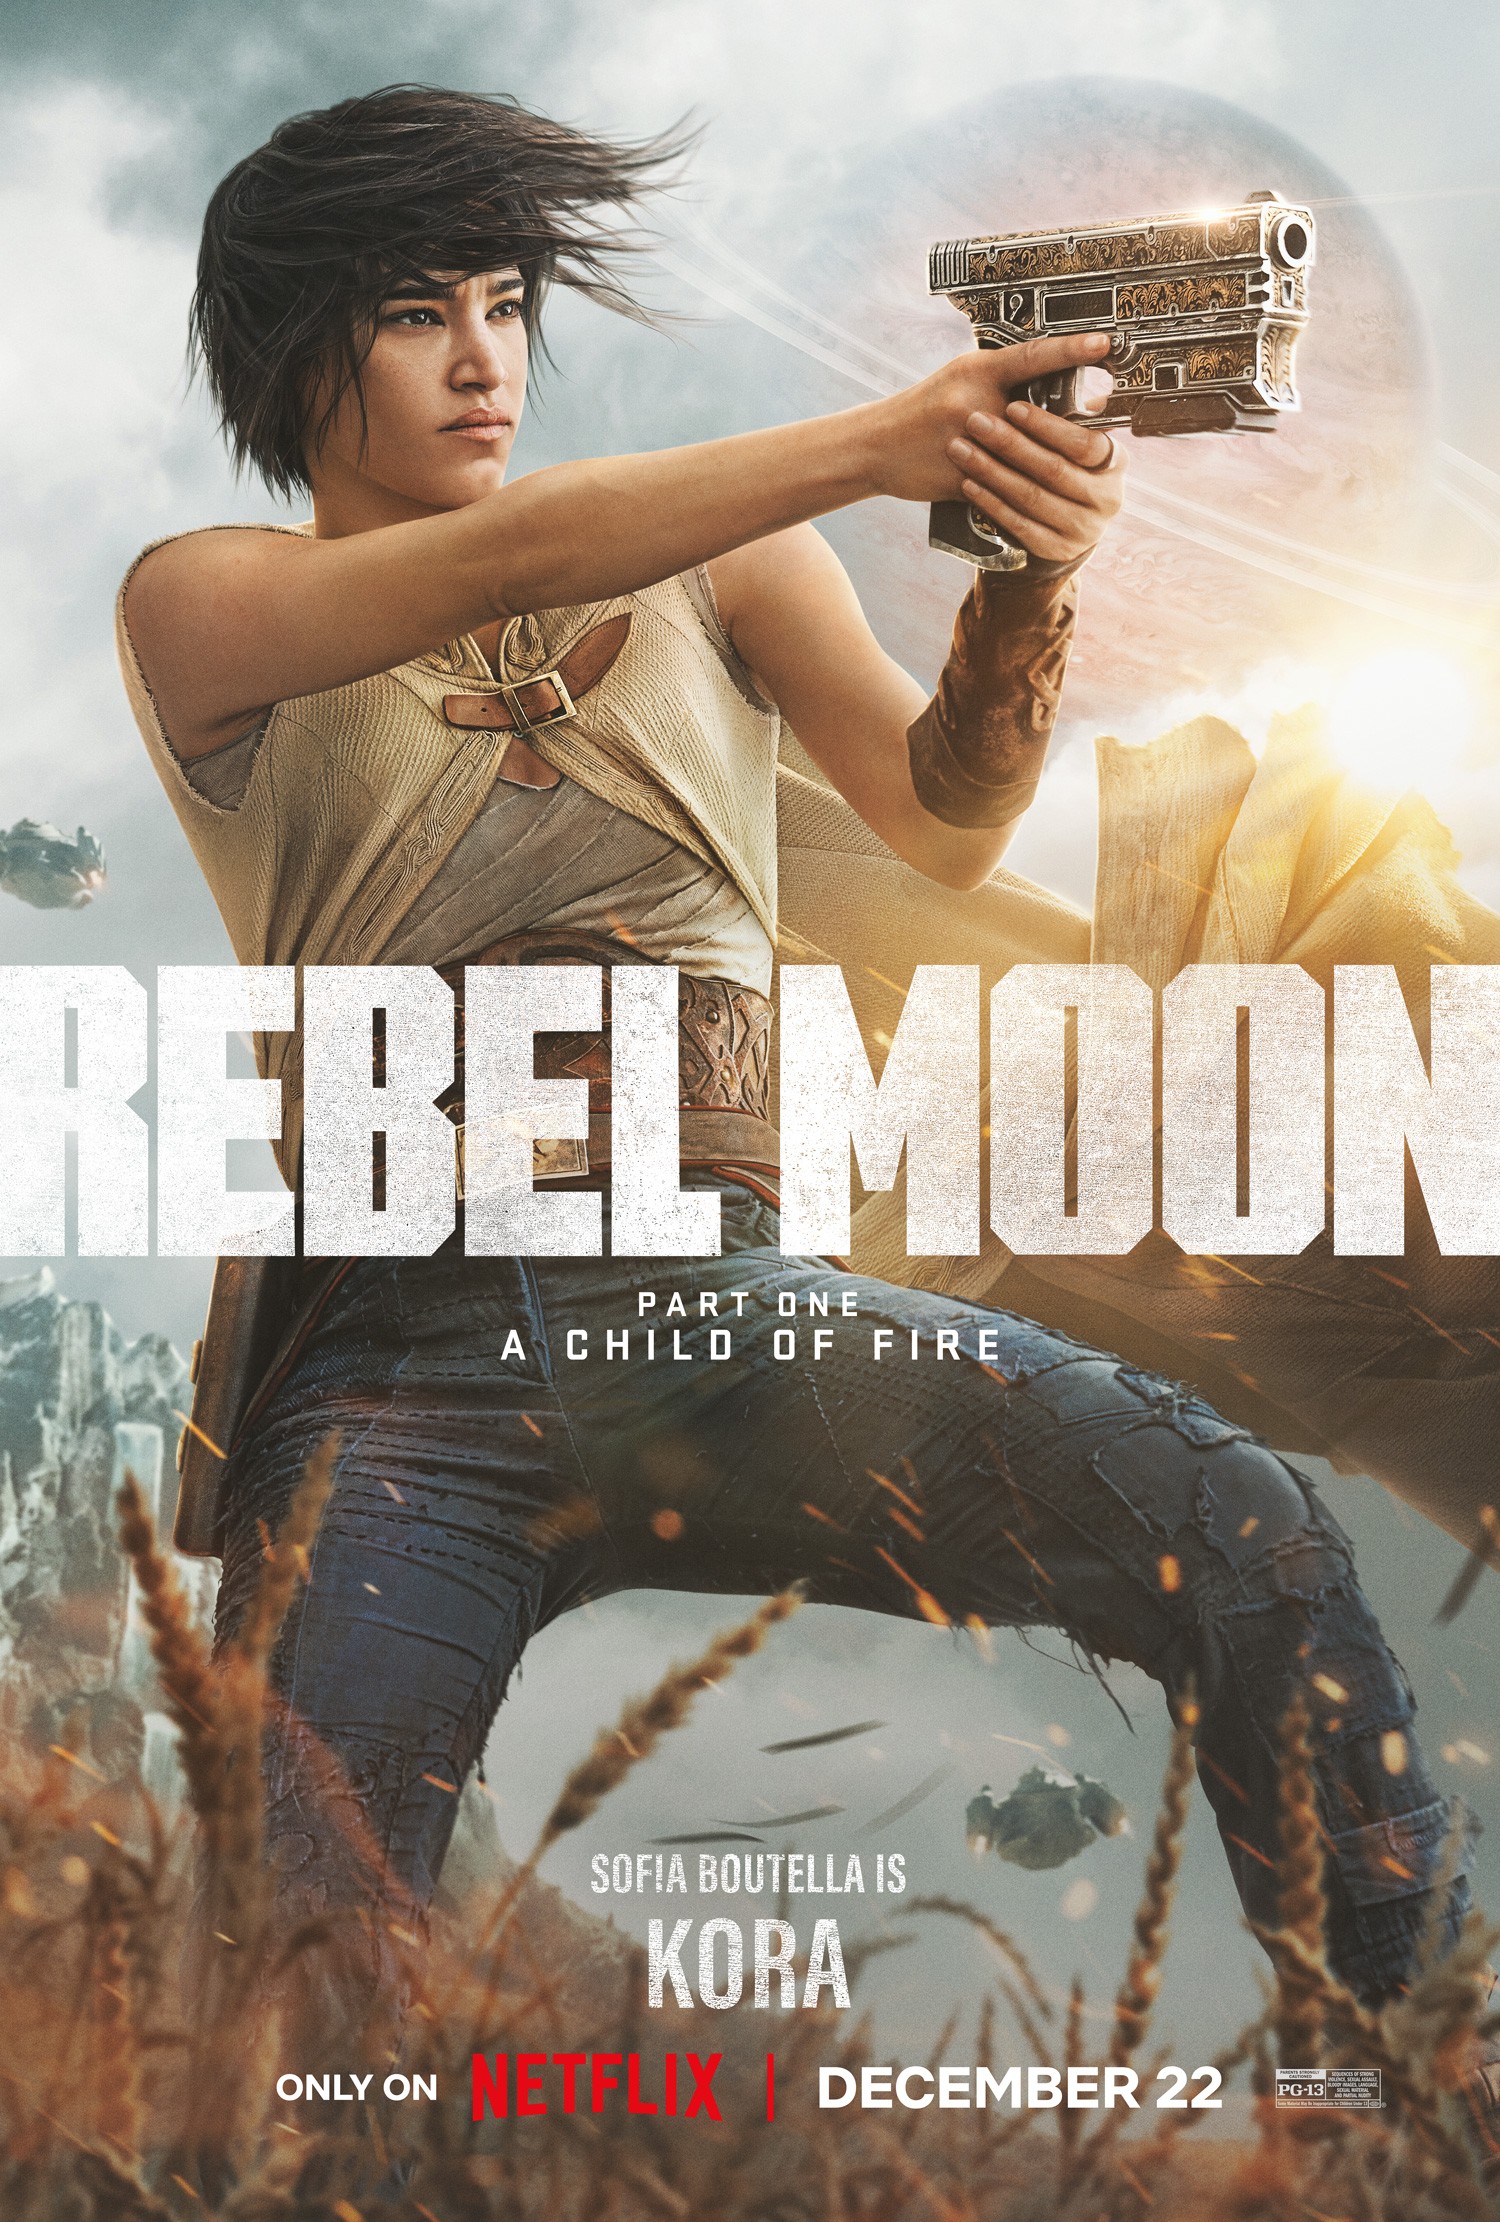 Rebel Moon: Zack Snyder publica primeiras imagens do filme; confira